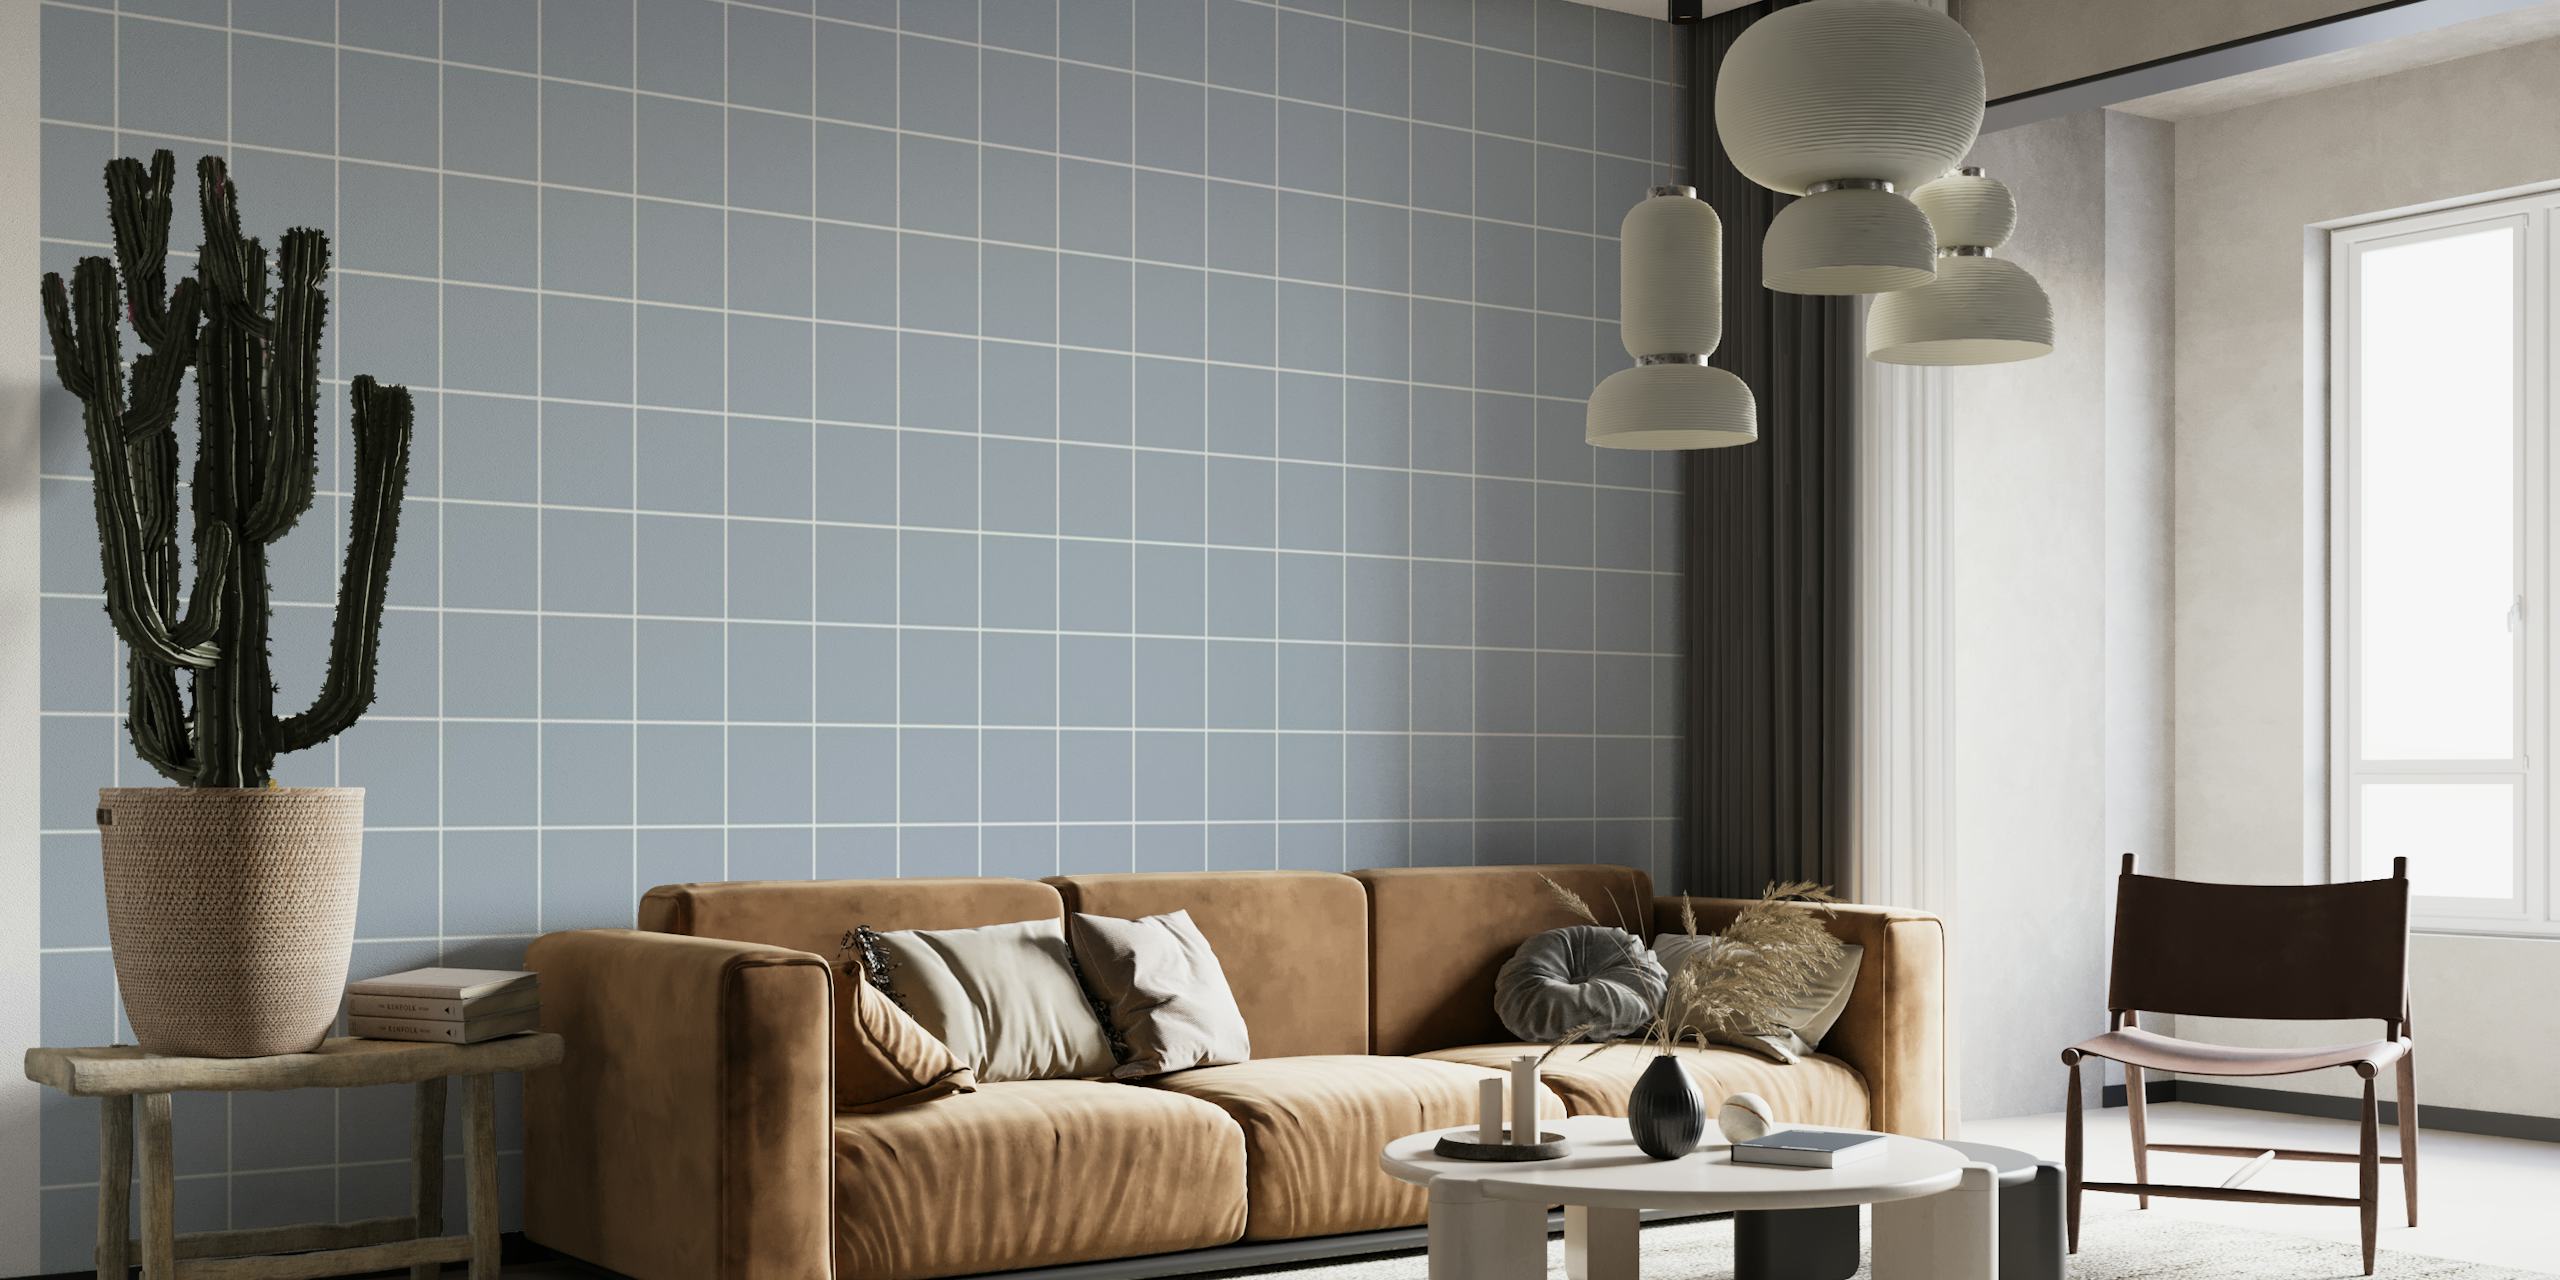 Moody plava zidna slika s rešetkastim uzorkom za elegantno uređenje interijera